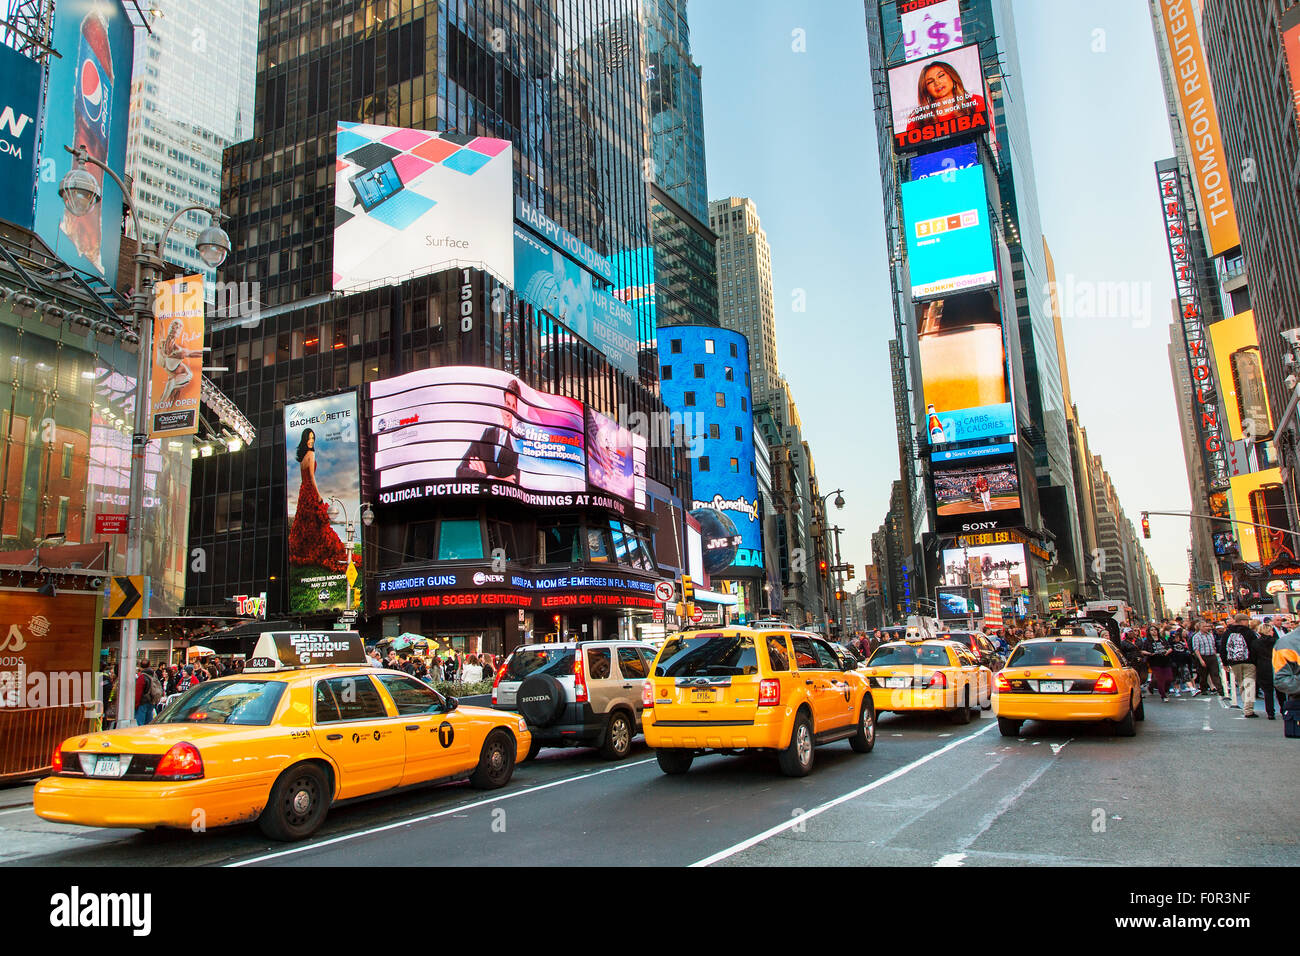 La ville de New York, sur Times Square taxi jaune Banque D'Images